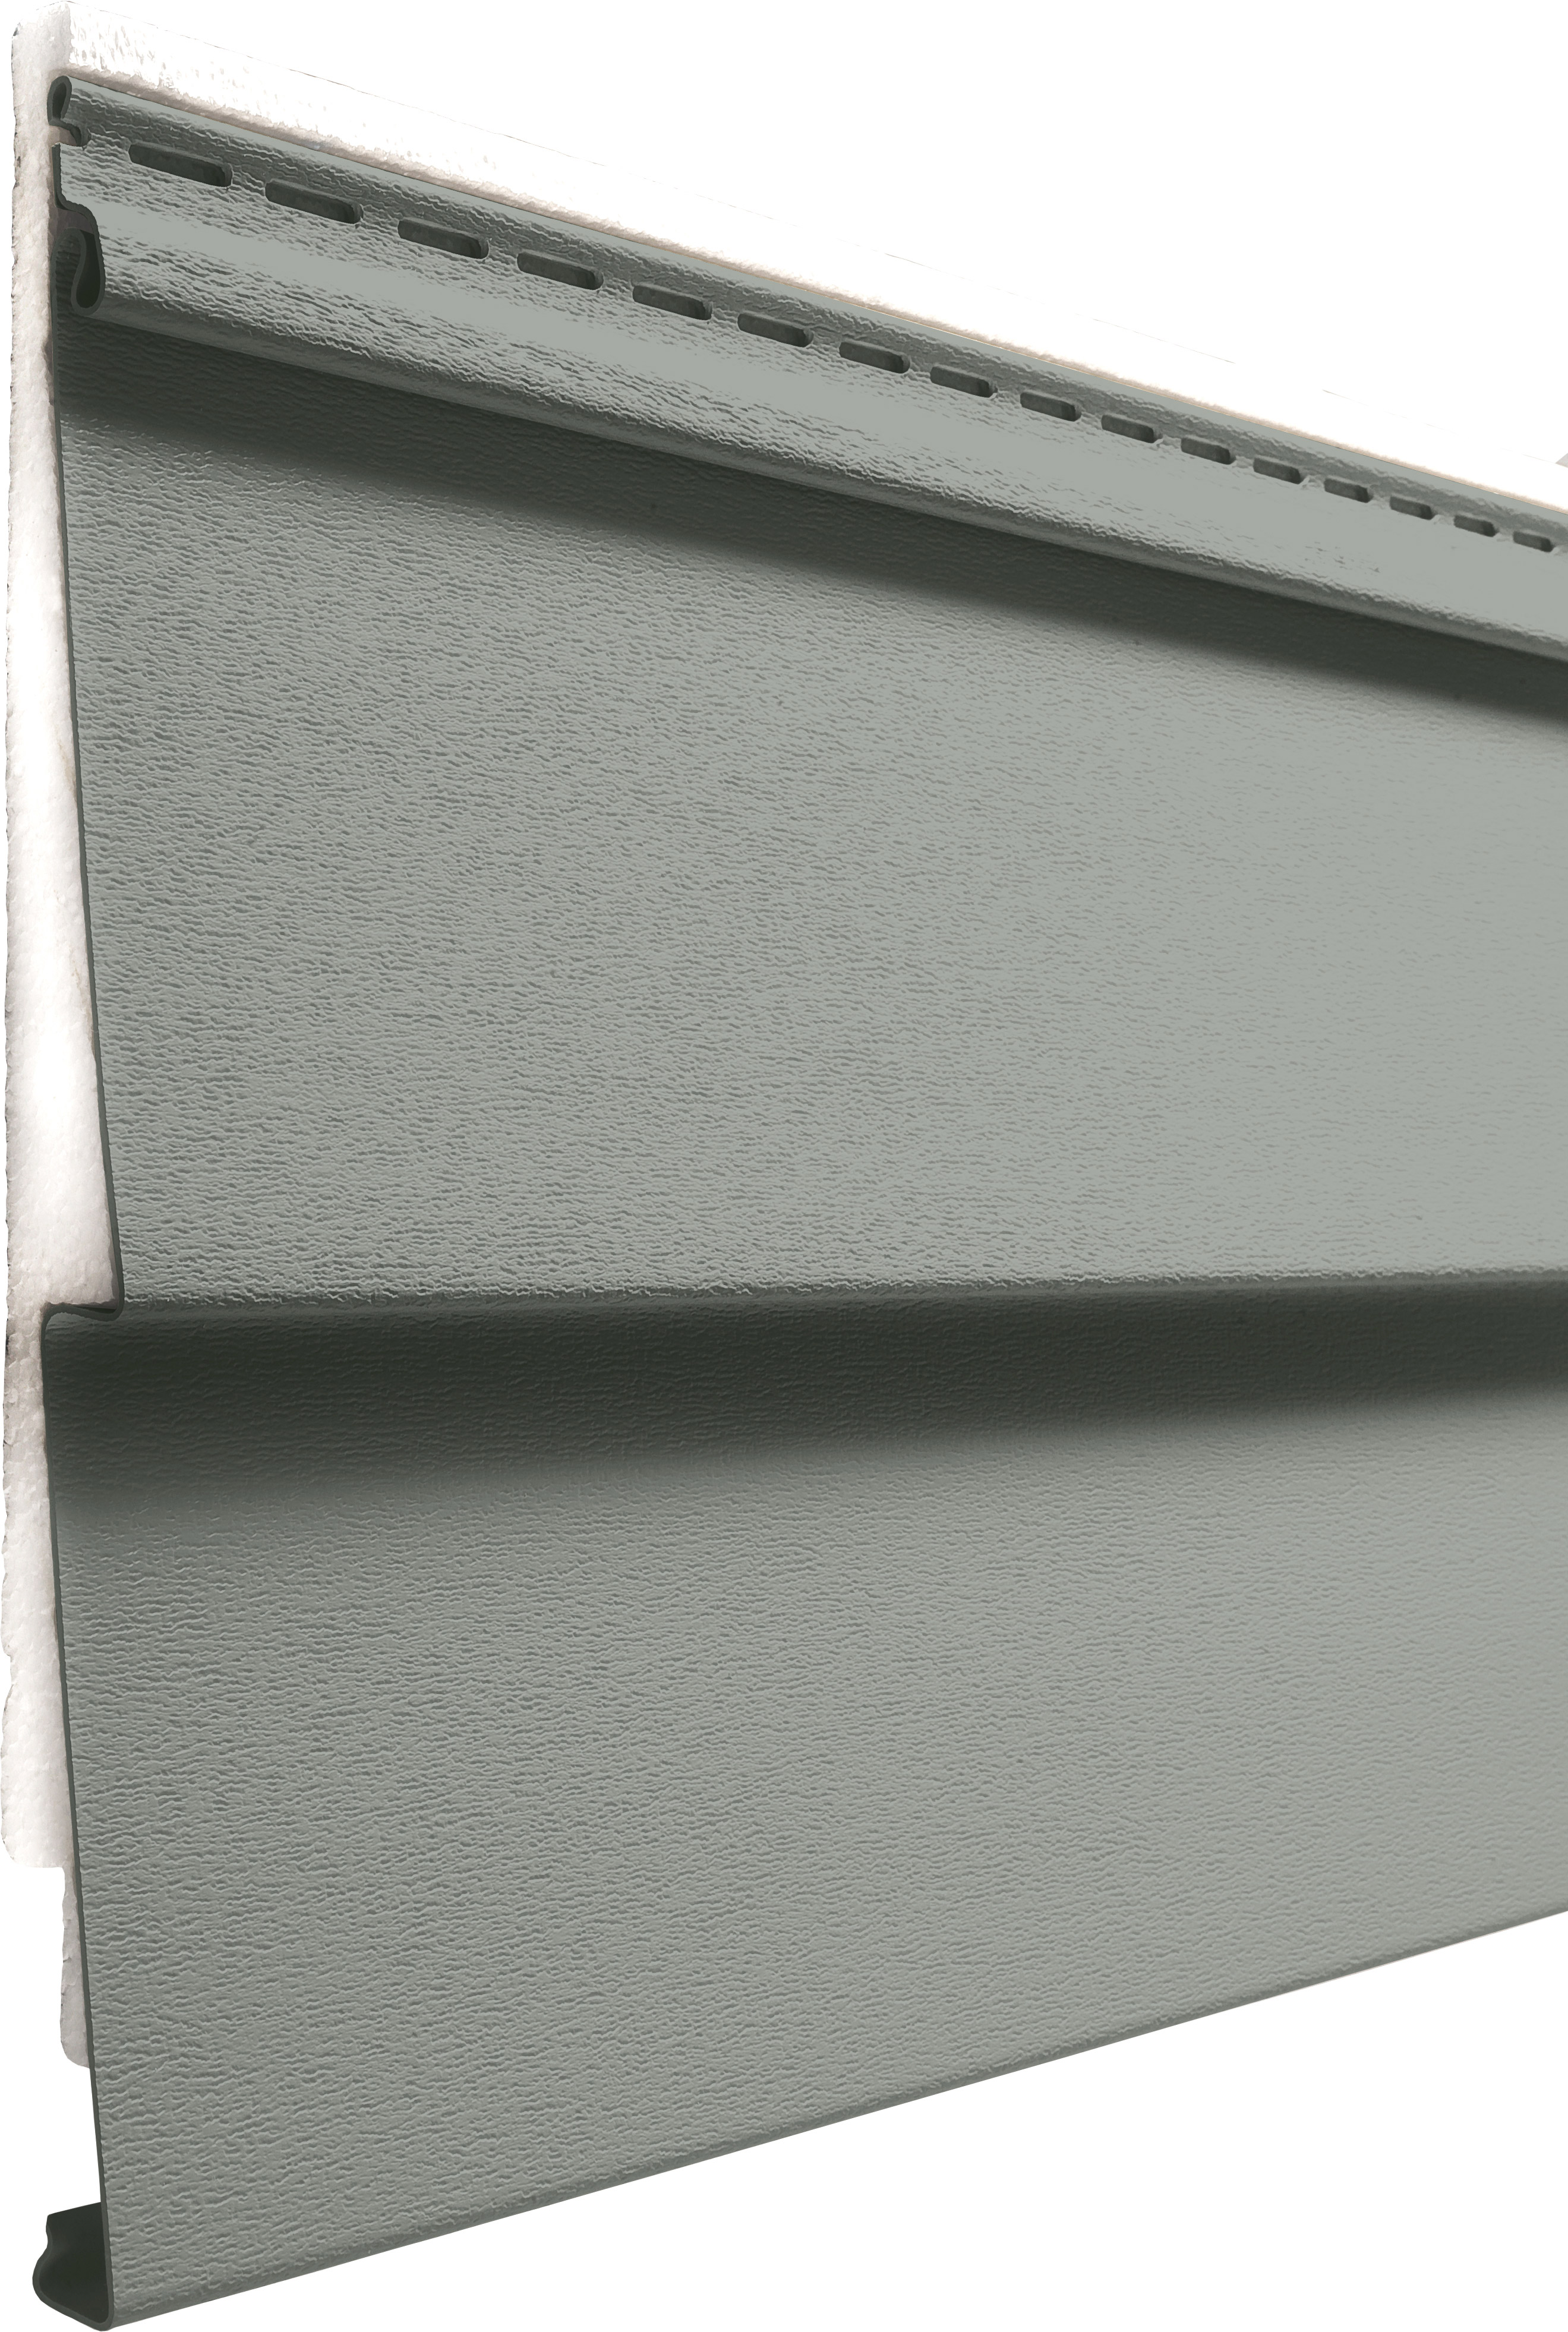 CedarMAX insulated vinyl clapboard siding in the color Granite